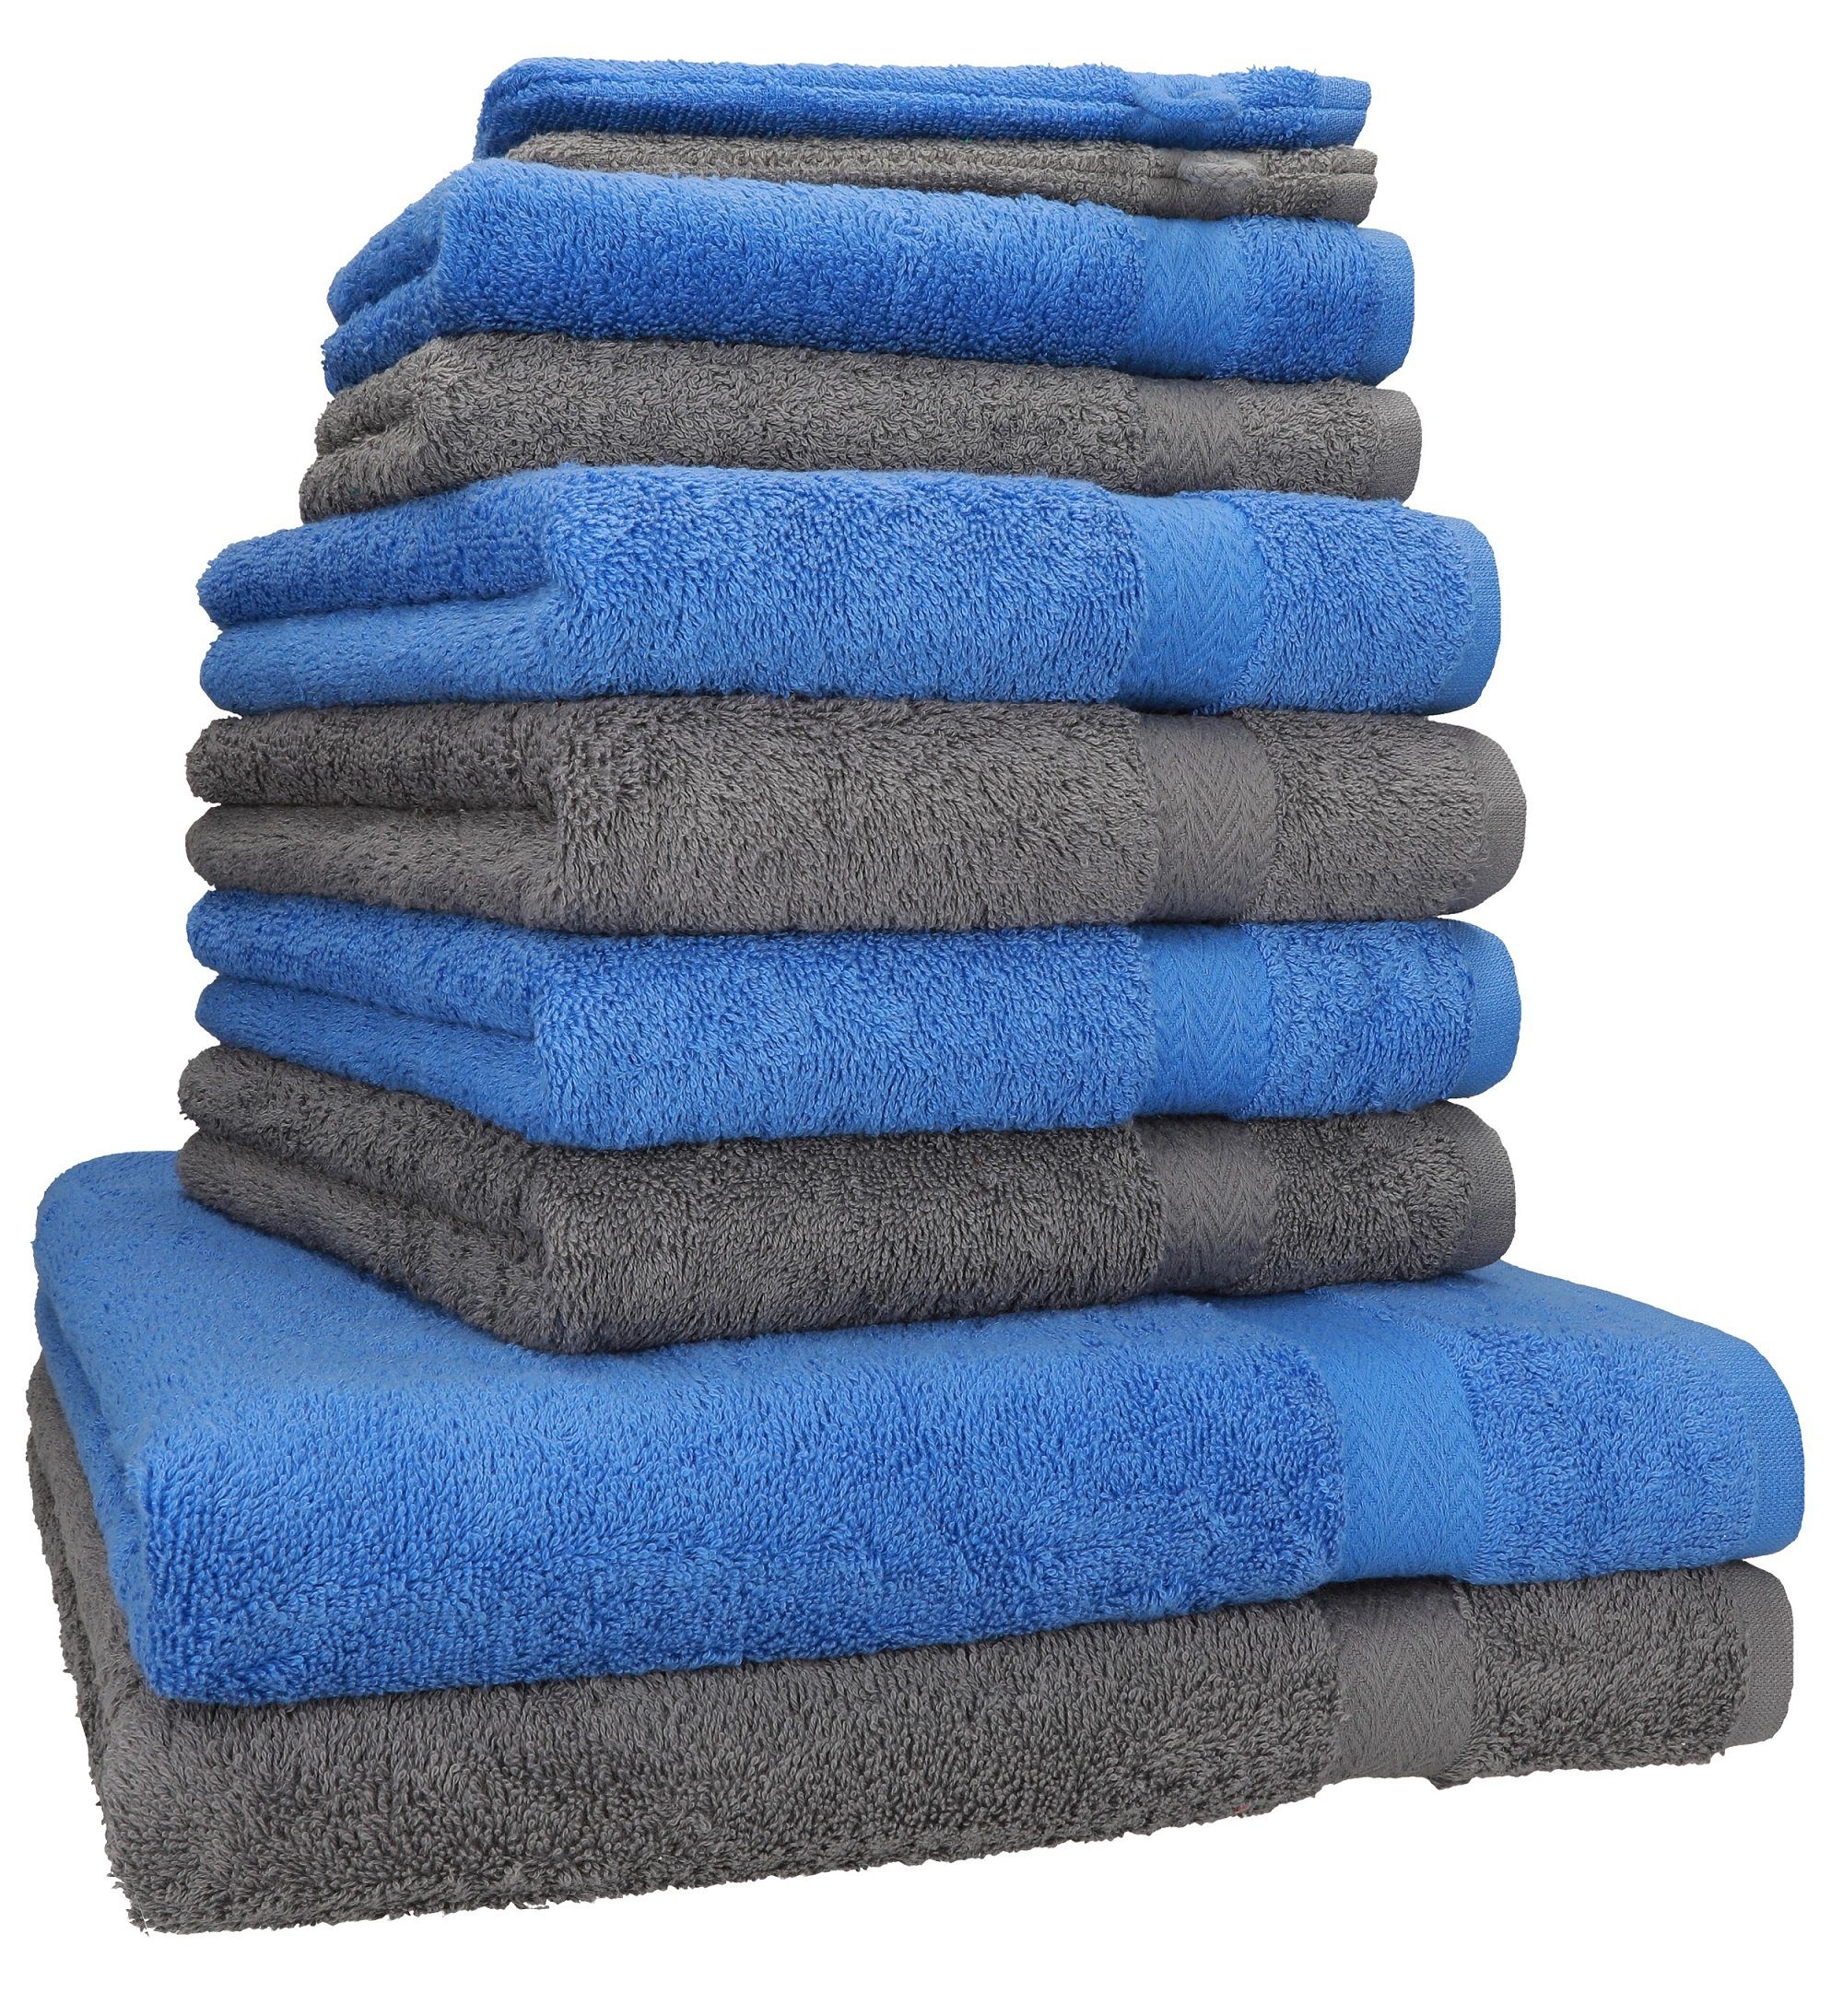 Betz Handtuch Set 10-TLG. Handtuch-Set Premium Farbe hellblau & anthrazit, Baumwolle, (10-tlg)